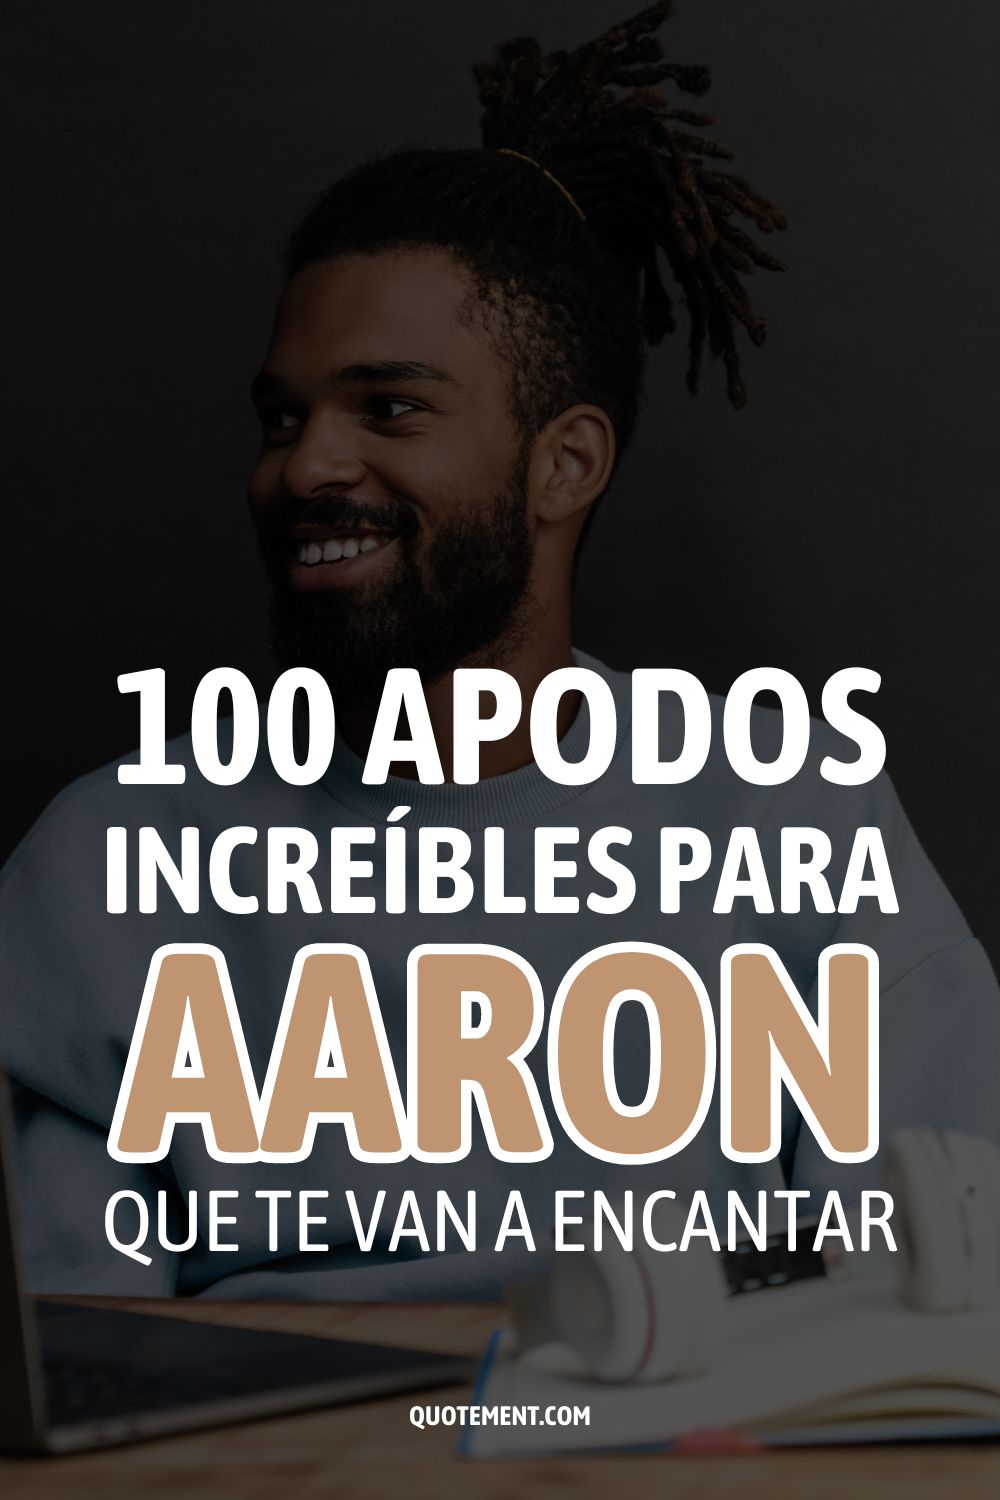 100 apodos increíbles para Aaron que te van a encantar